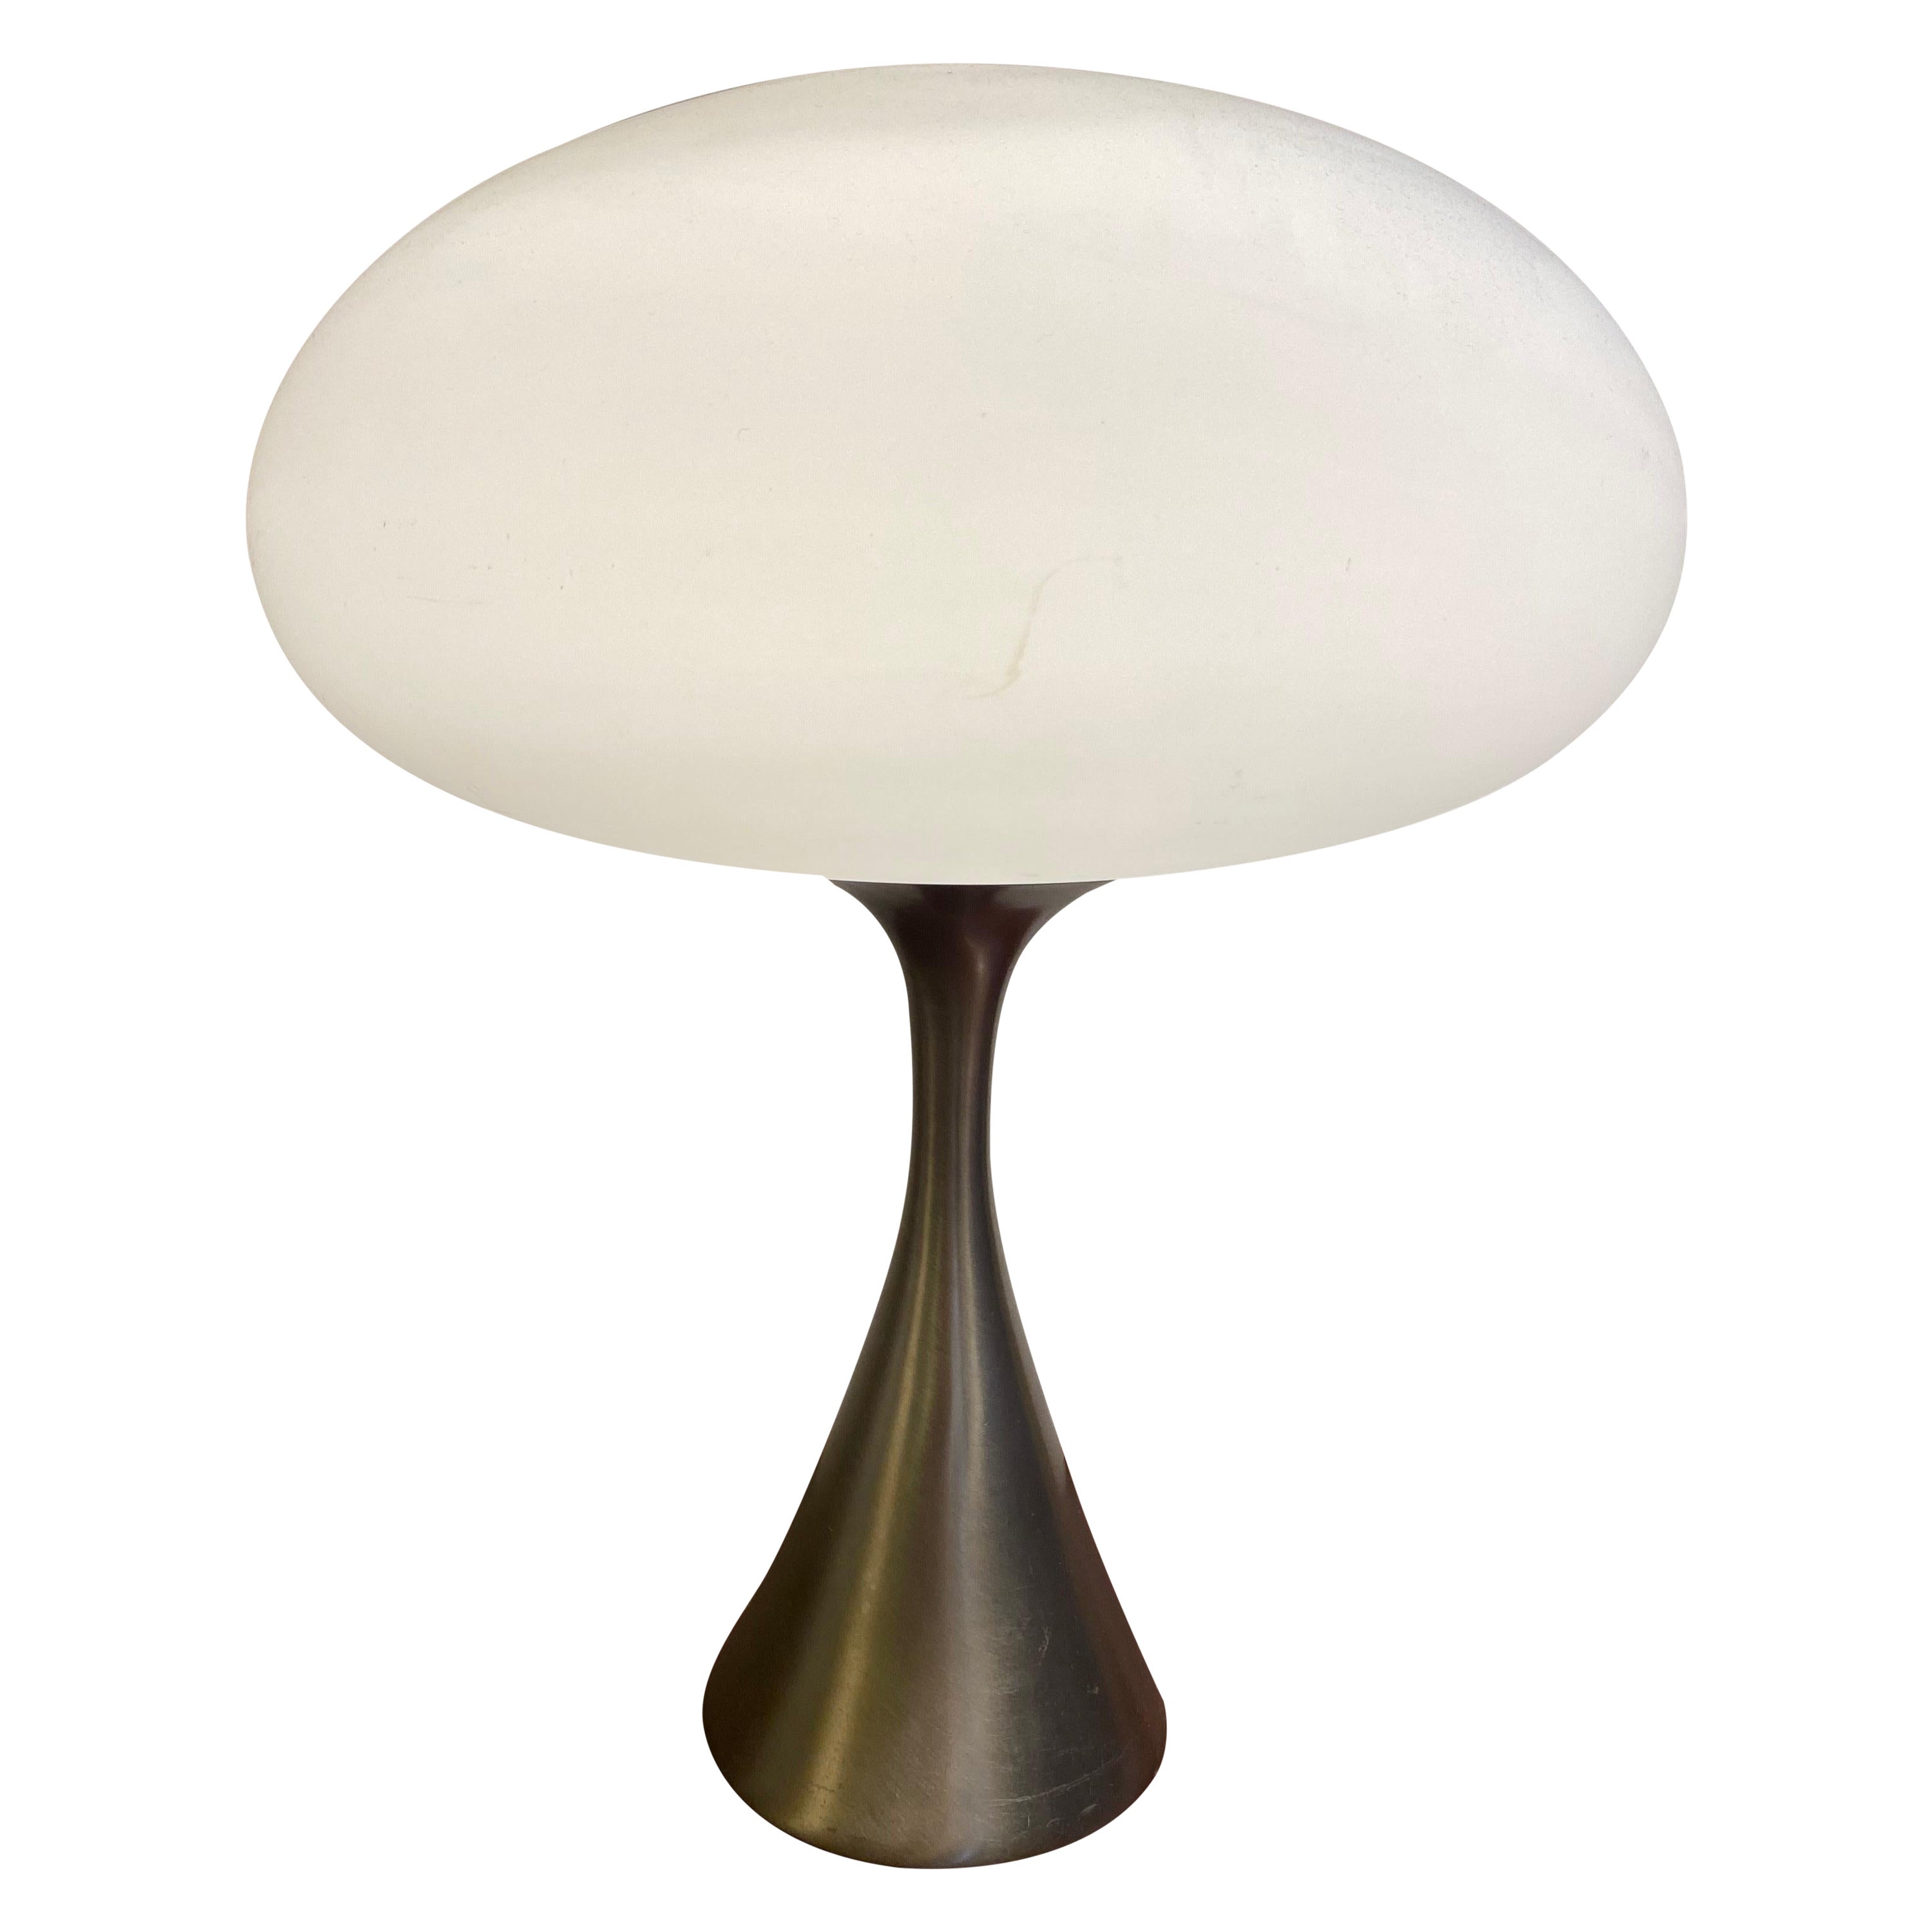 Original Stainless Laurel Mushroom Table Lamp